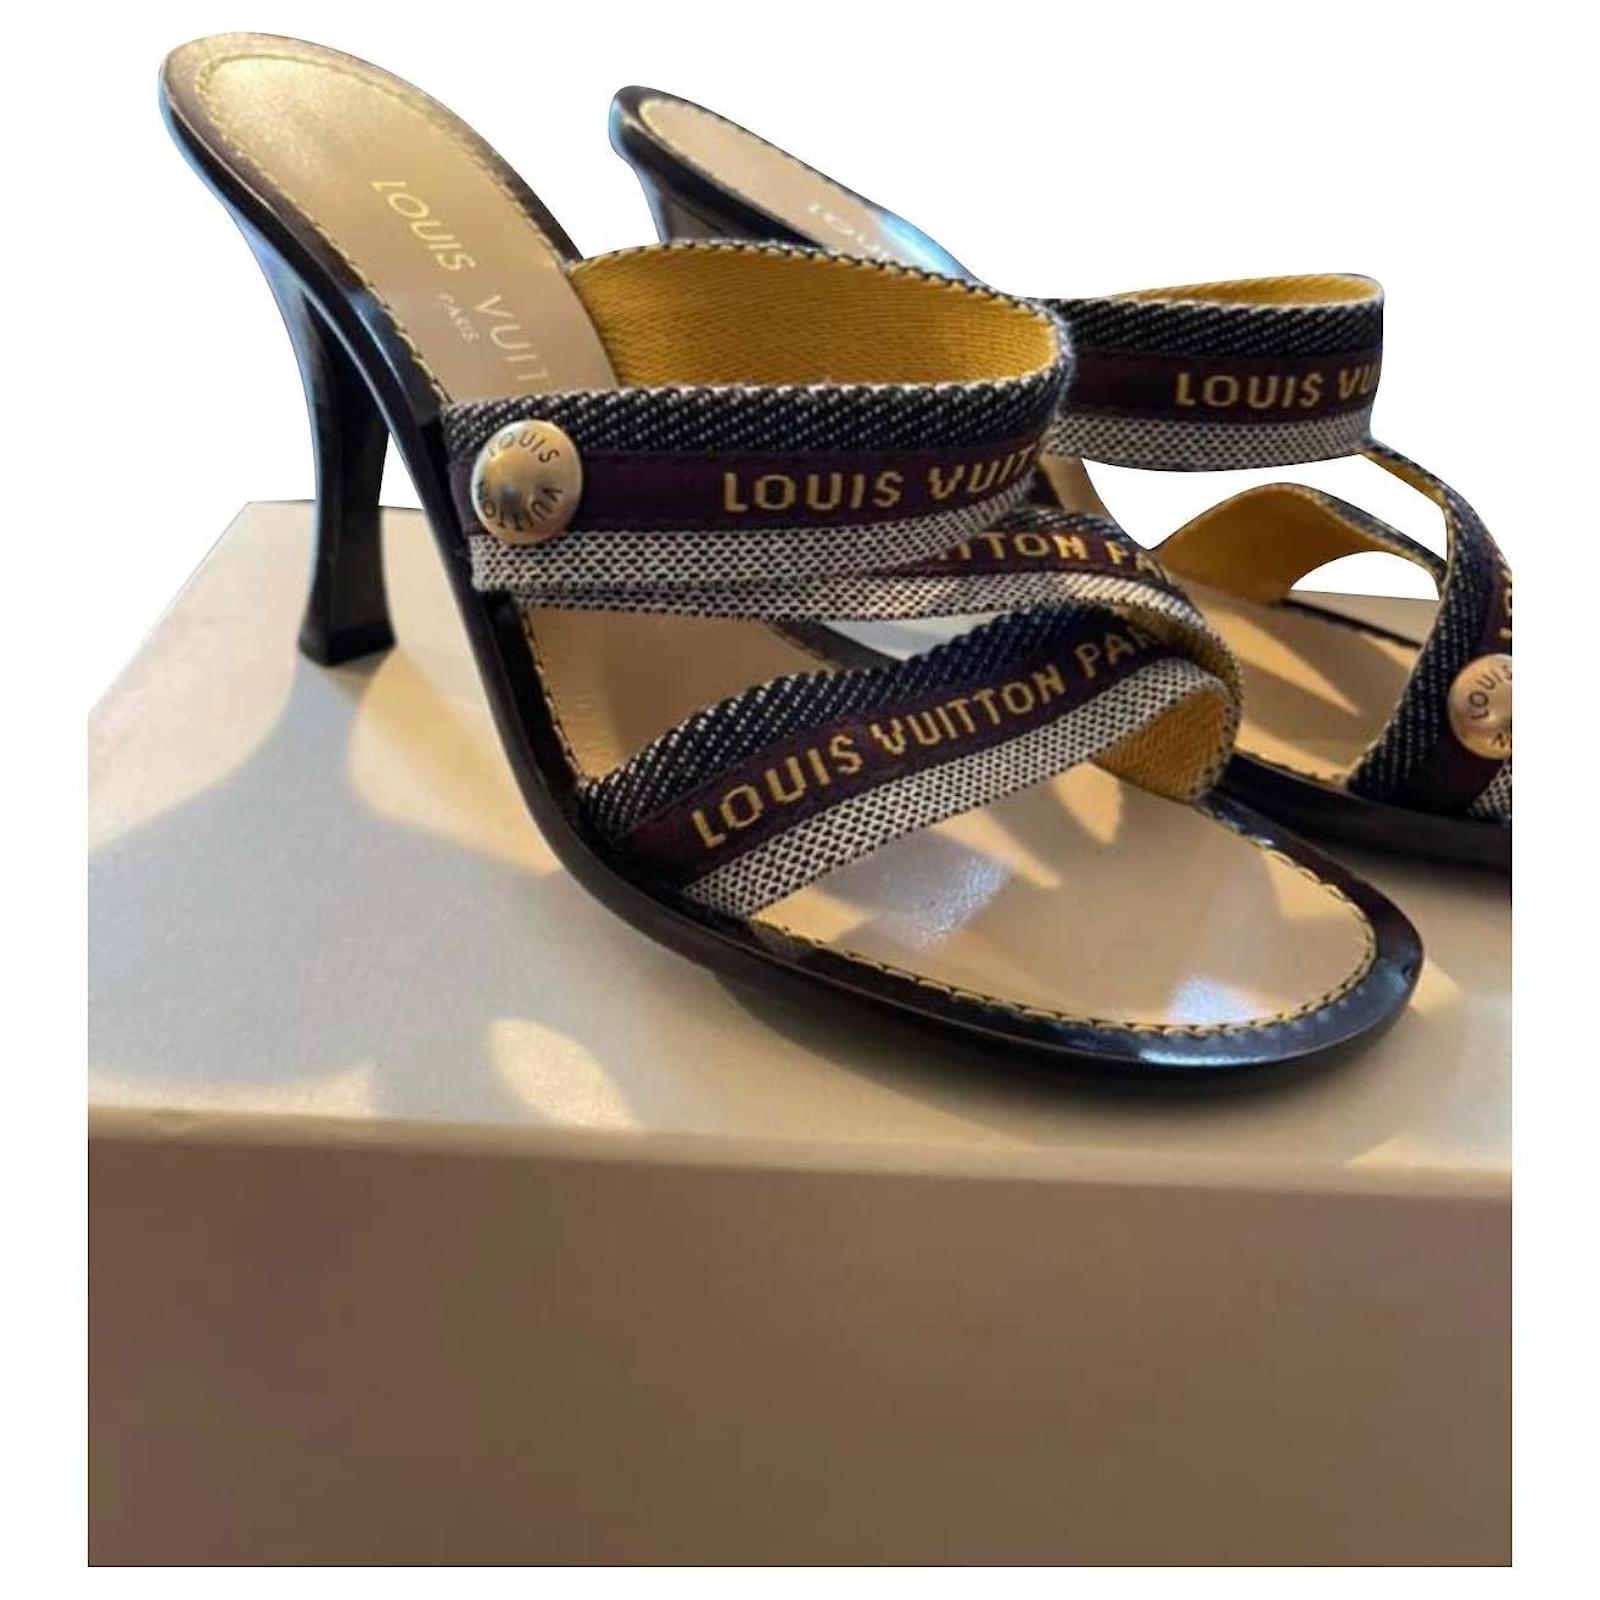 Louis Vuitton, Shoes, Louis Vuitton Sandals Heels